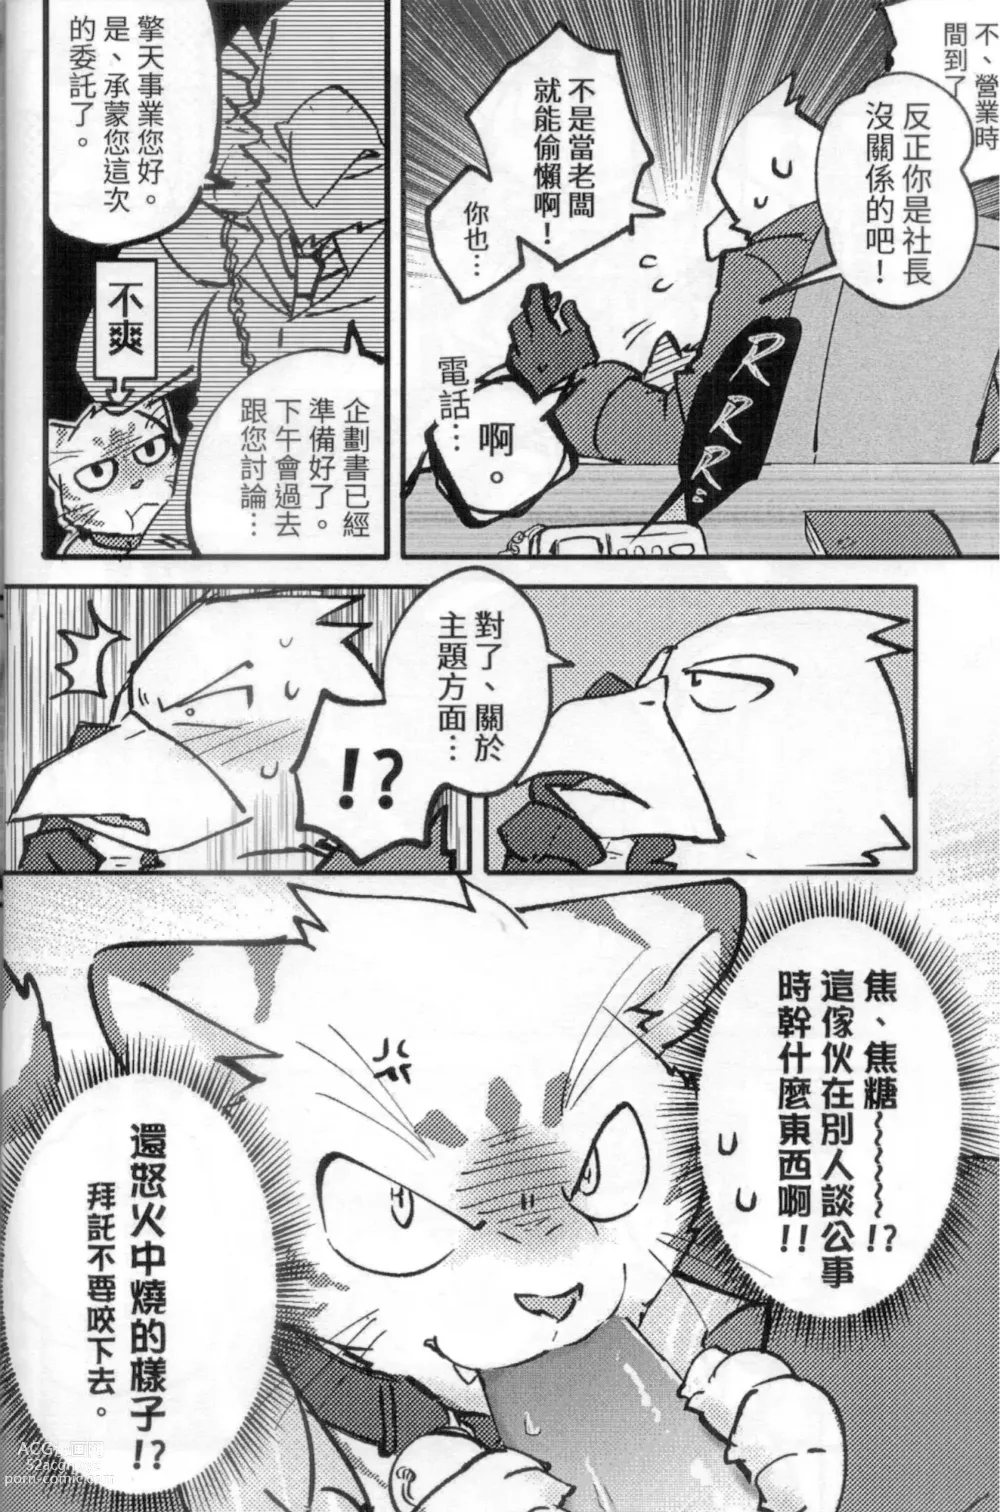 Page 7 of doujinshi 啊就脫掉吧